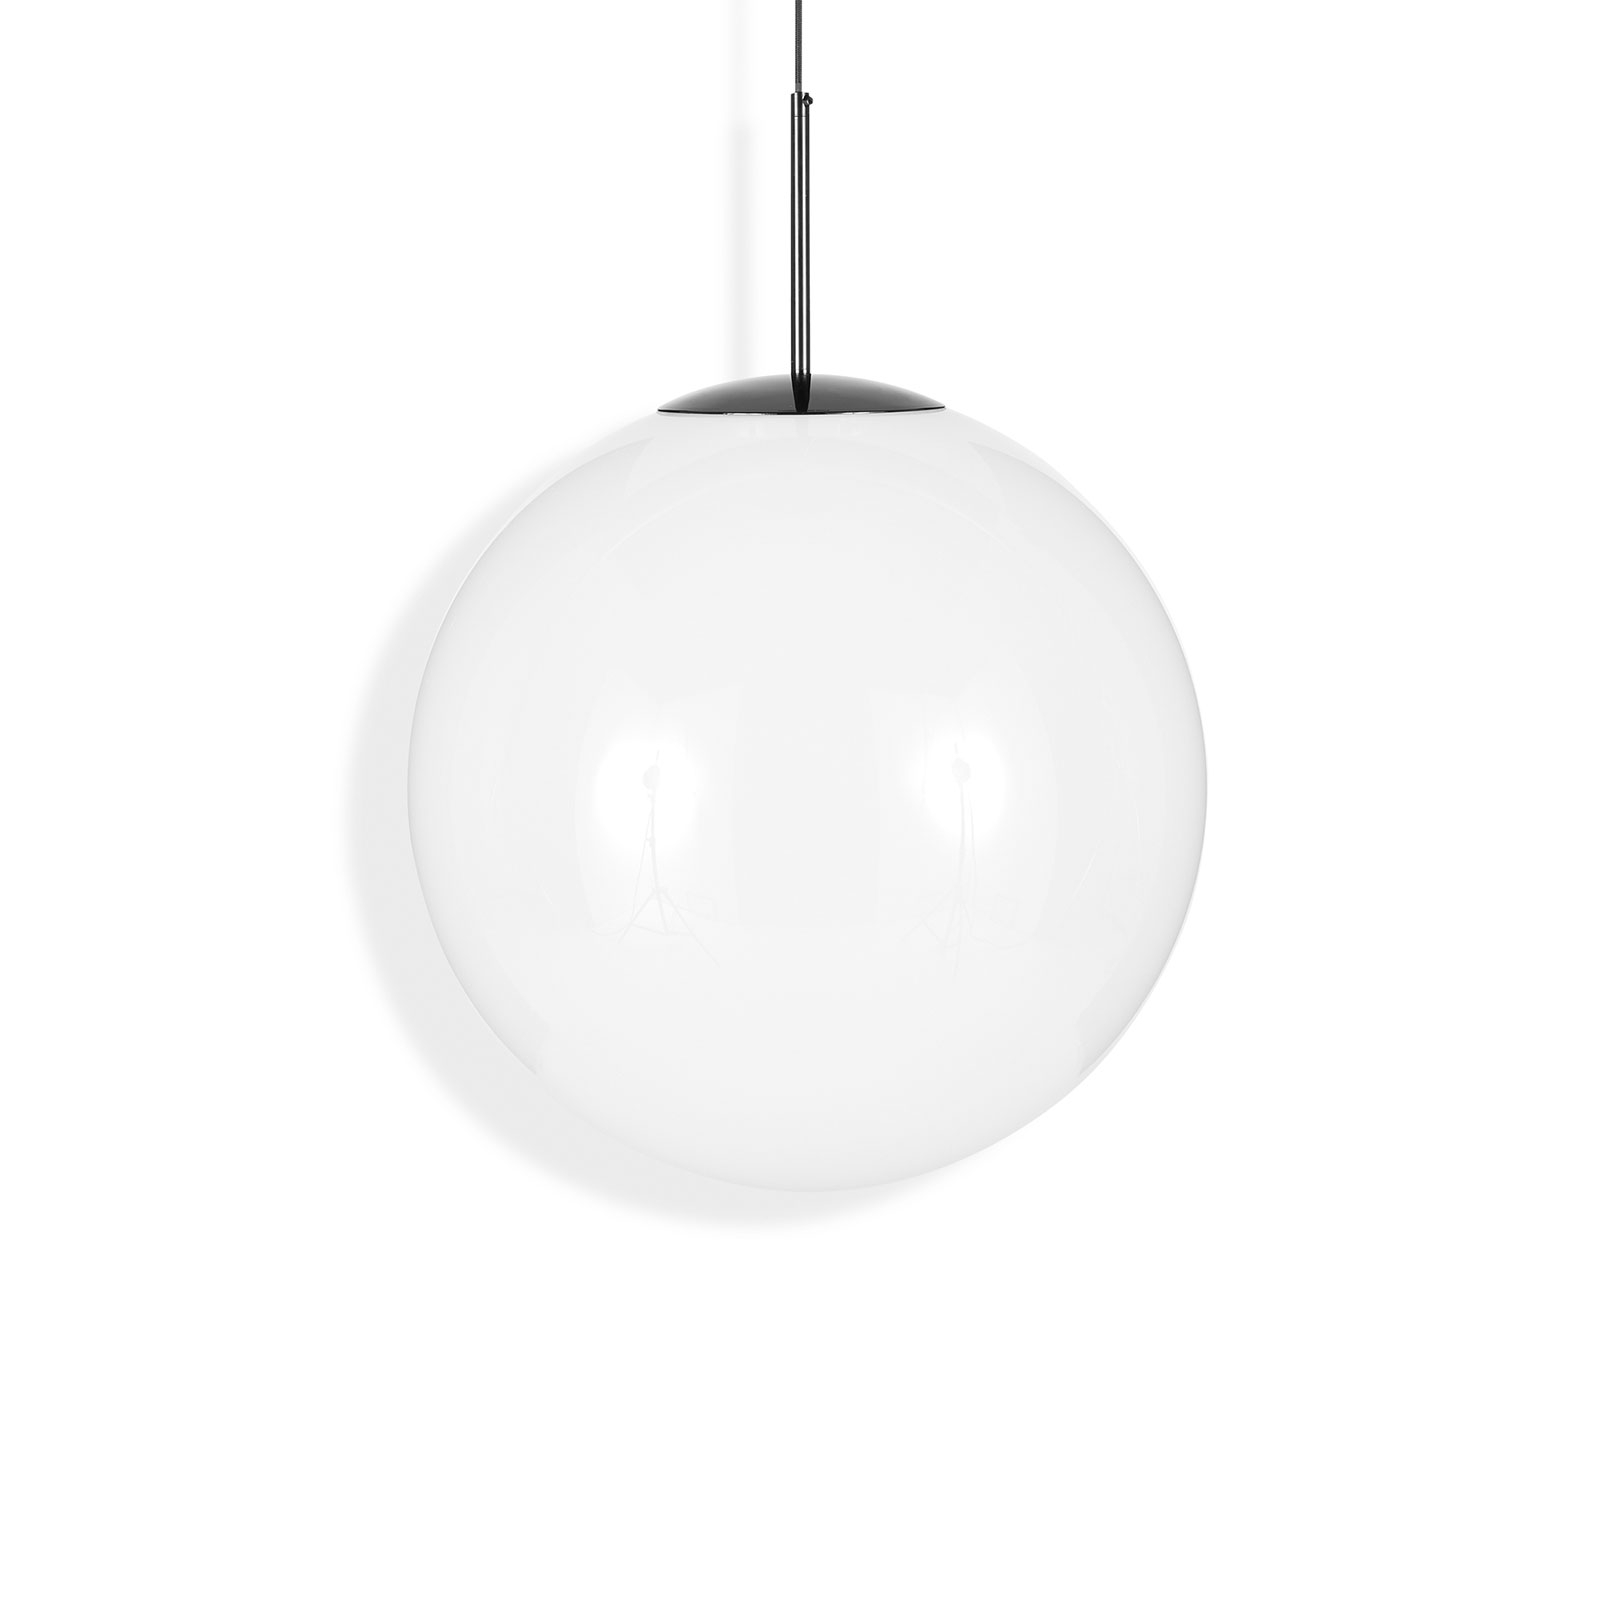 Tom Dixon Globe kulaté LED závěsné světlo, Ø 50 cm